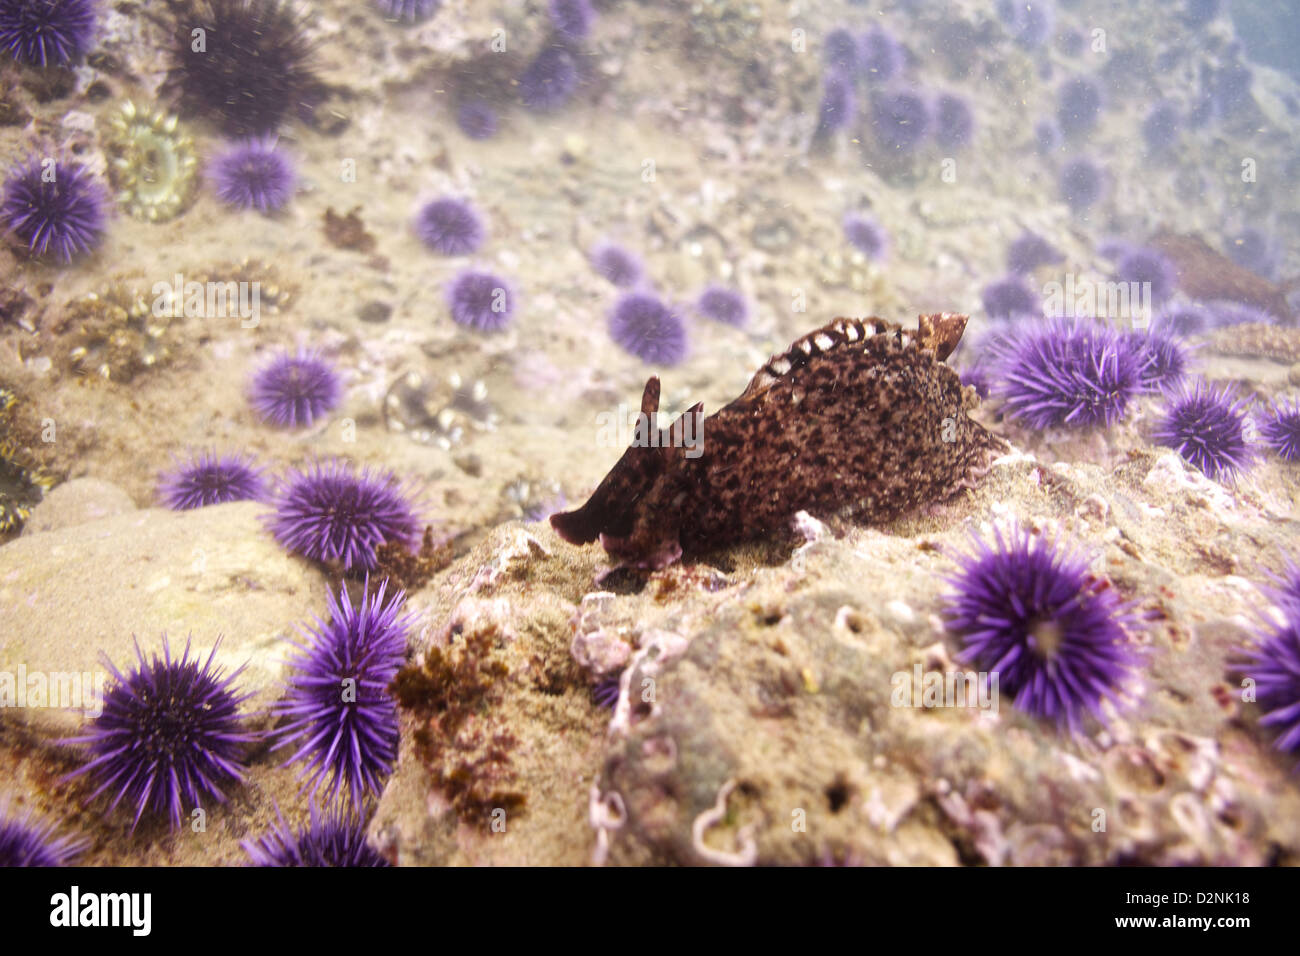 Ein California Meer Hase sitzt unter den violetten Seeigel Stockfoto